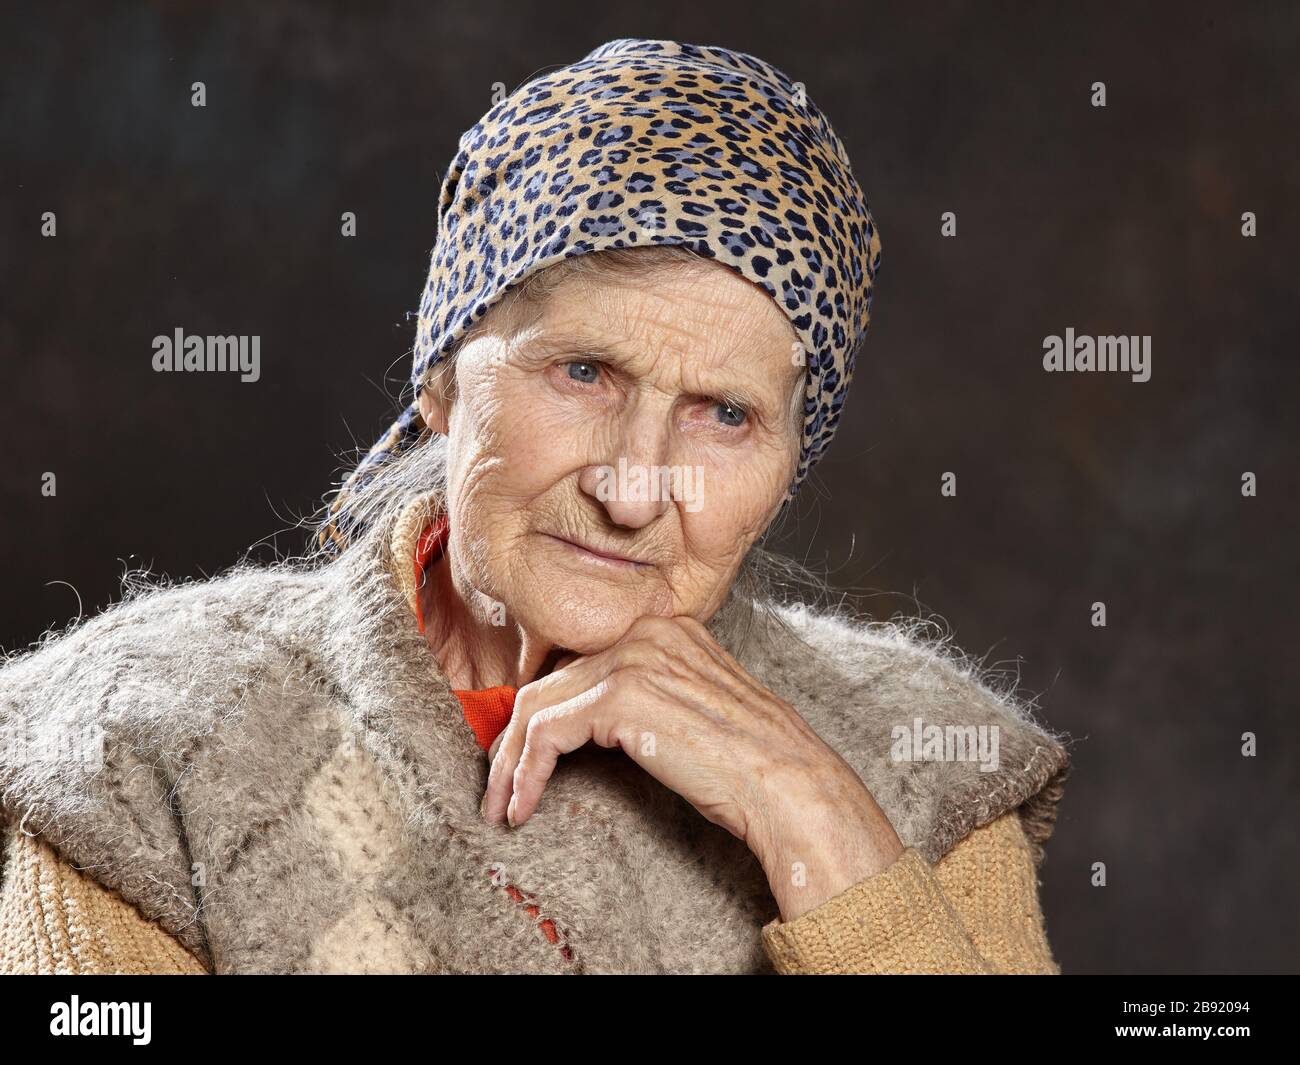 Portrait de la vieille femme sur fond sombre.Les personnes de cet âge sont les plus vulnérables durant les épidémies Banque D'Images